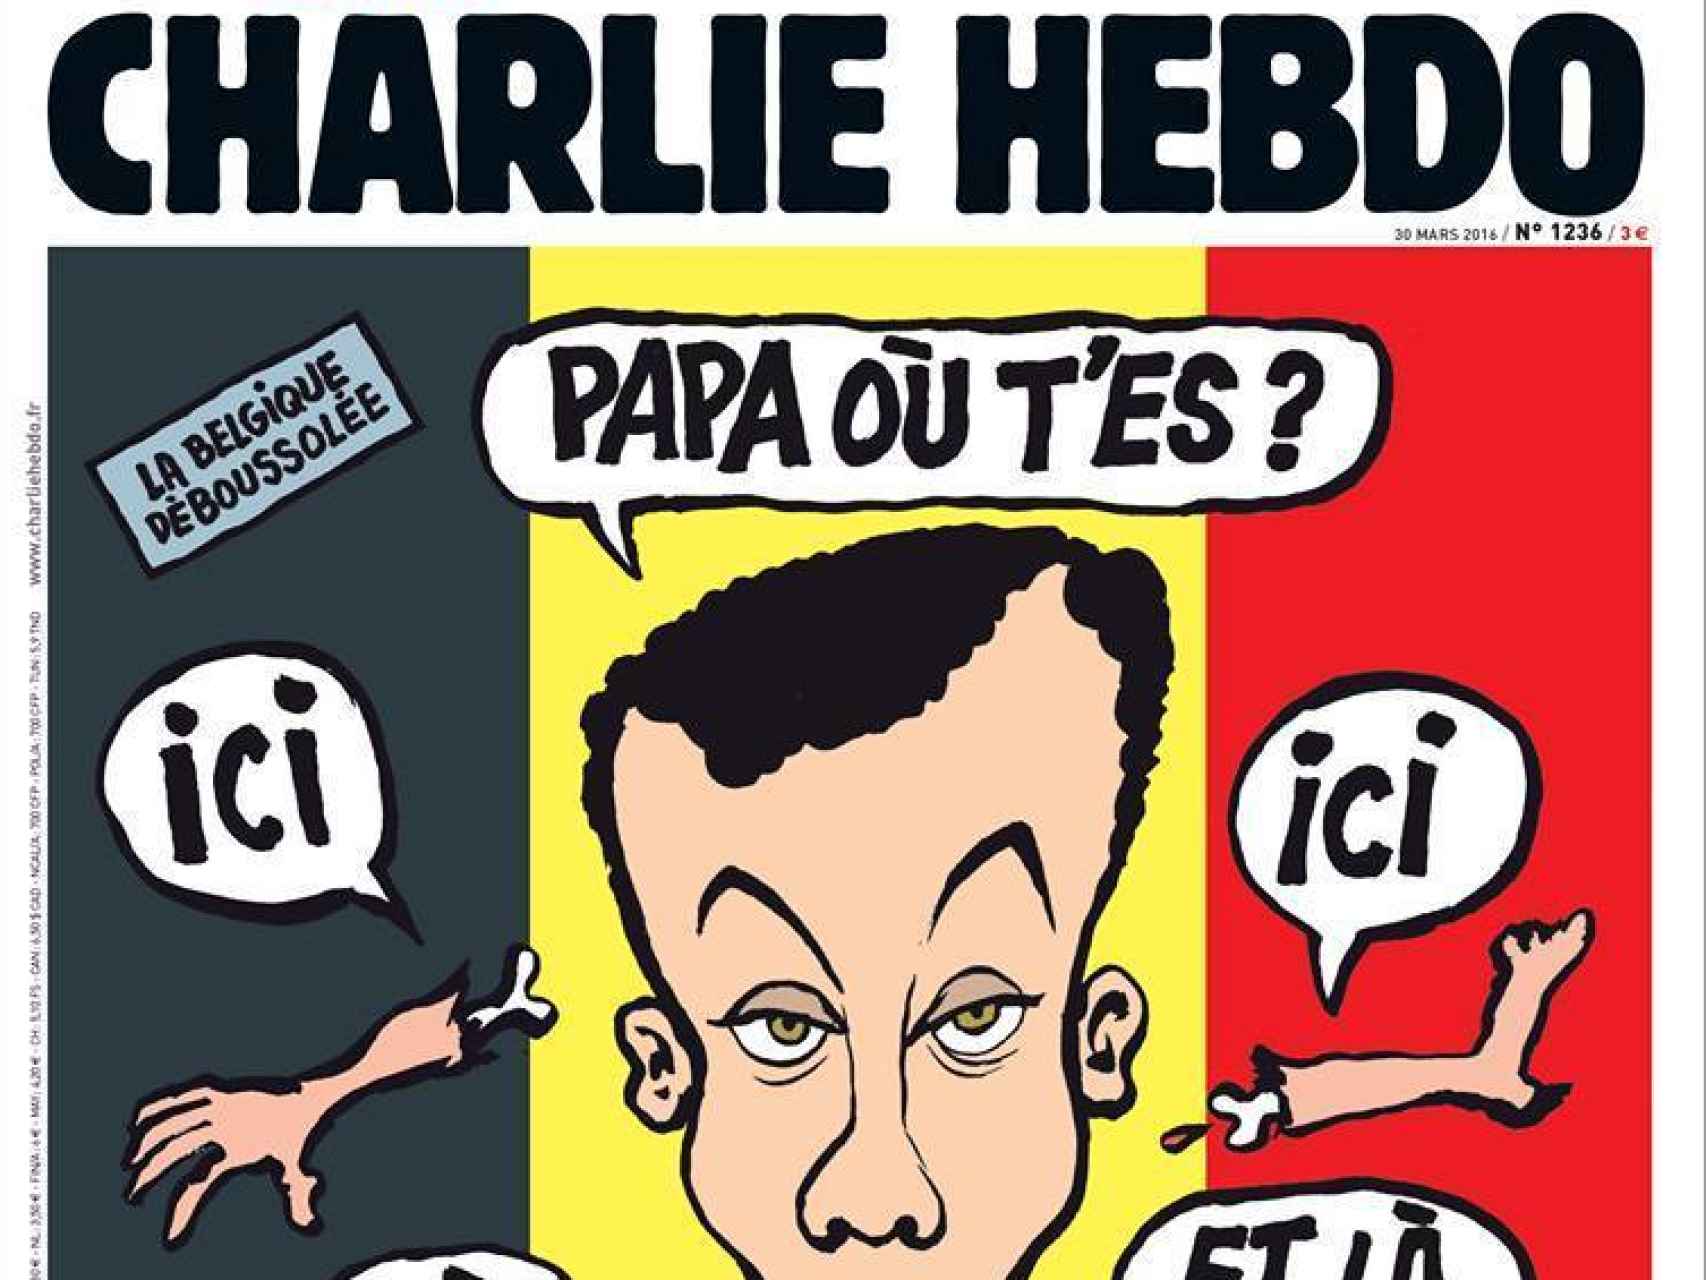 Charlie Hebdo ha recibido amenazas cibernéticas.